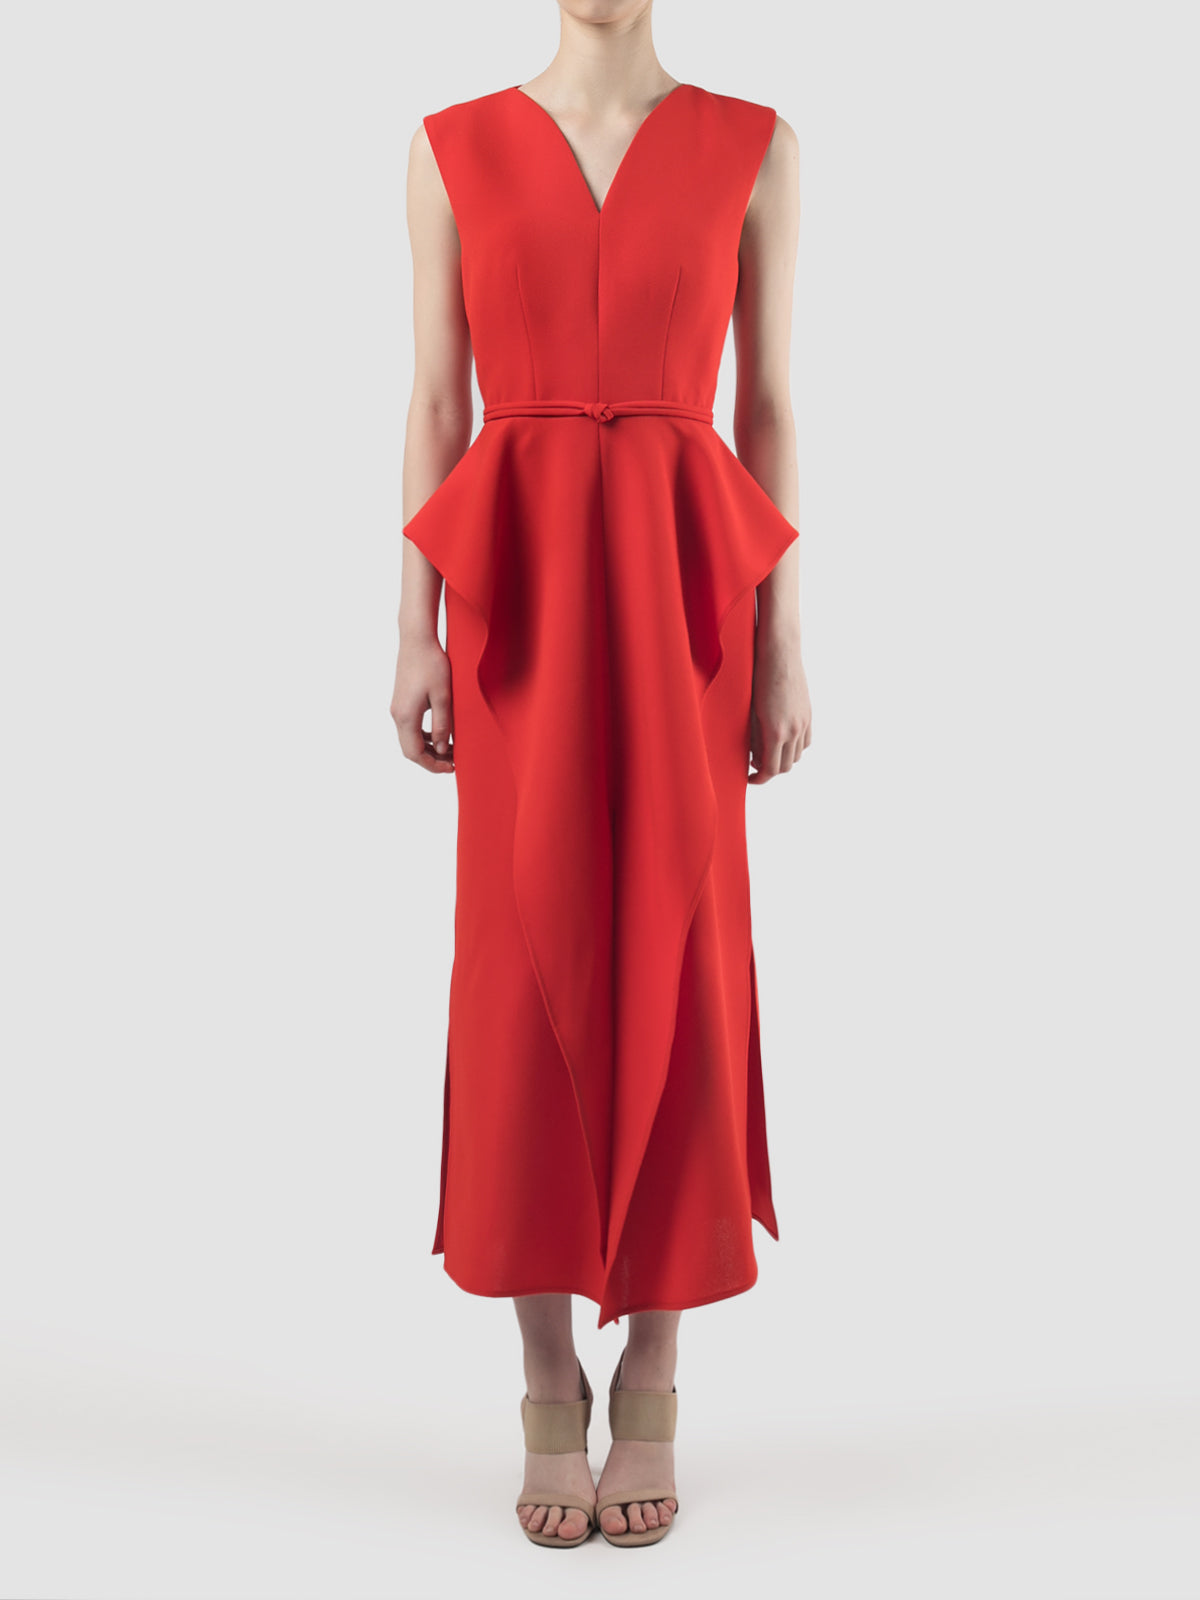 Giocoso scarlet red sleeveless maxi-dress